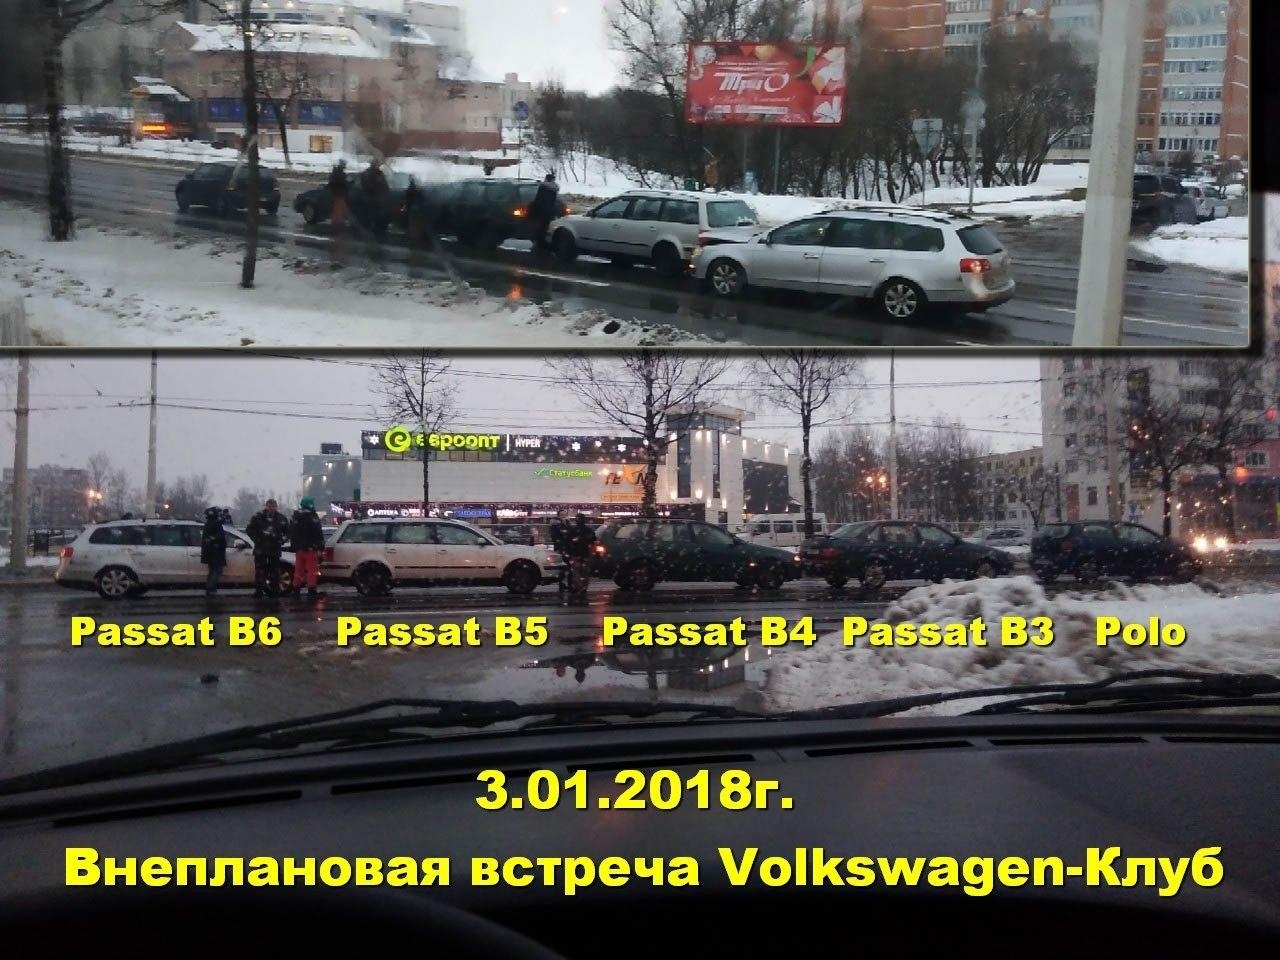 Accident in Belarus - Crash, Volkswagen, Road accident, Republic of Belarus, Coincidence